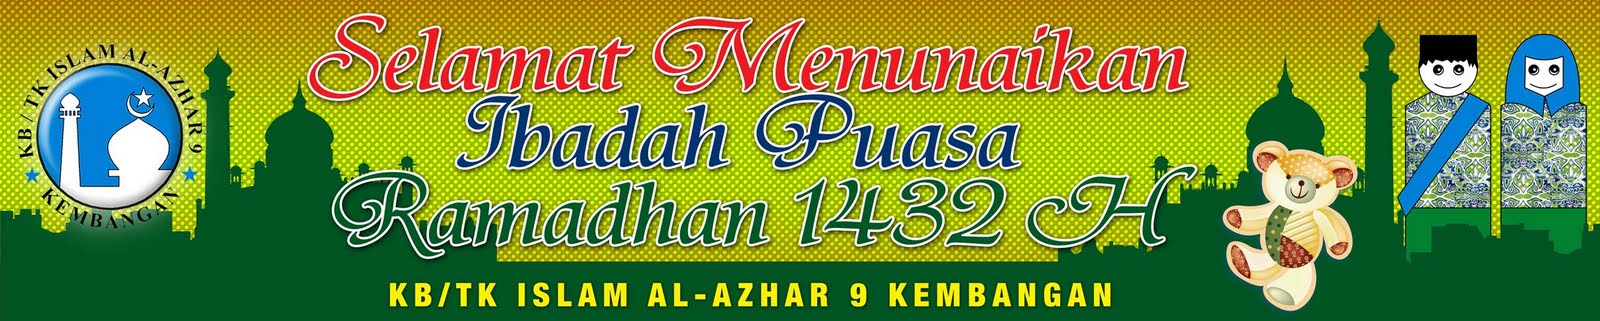 Contoh Spanduk Ramadhan  www.InfoPercetakan.com